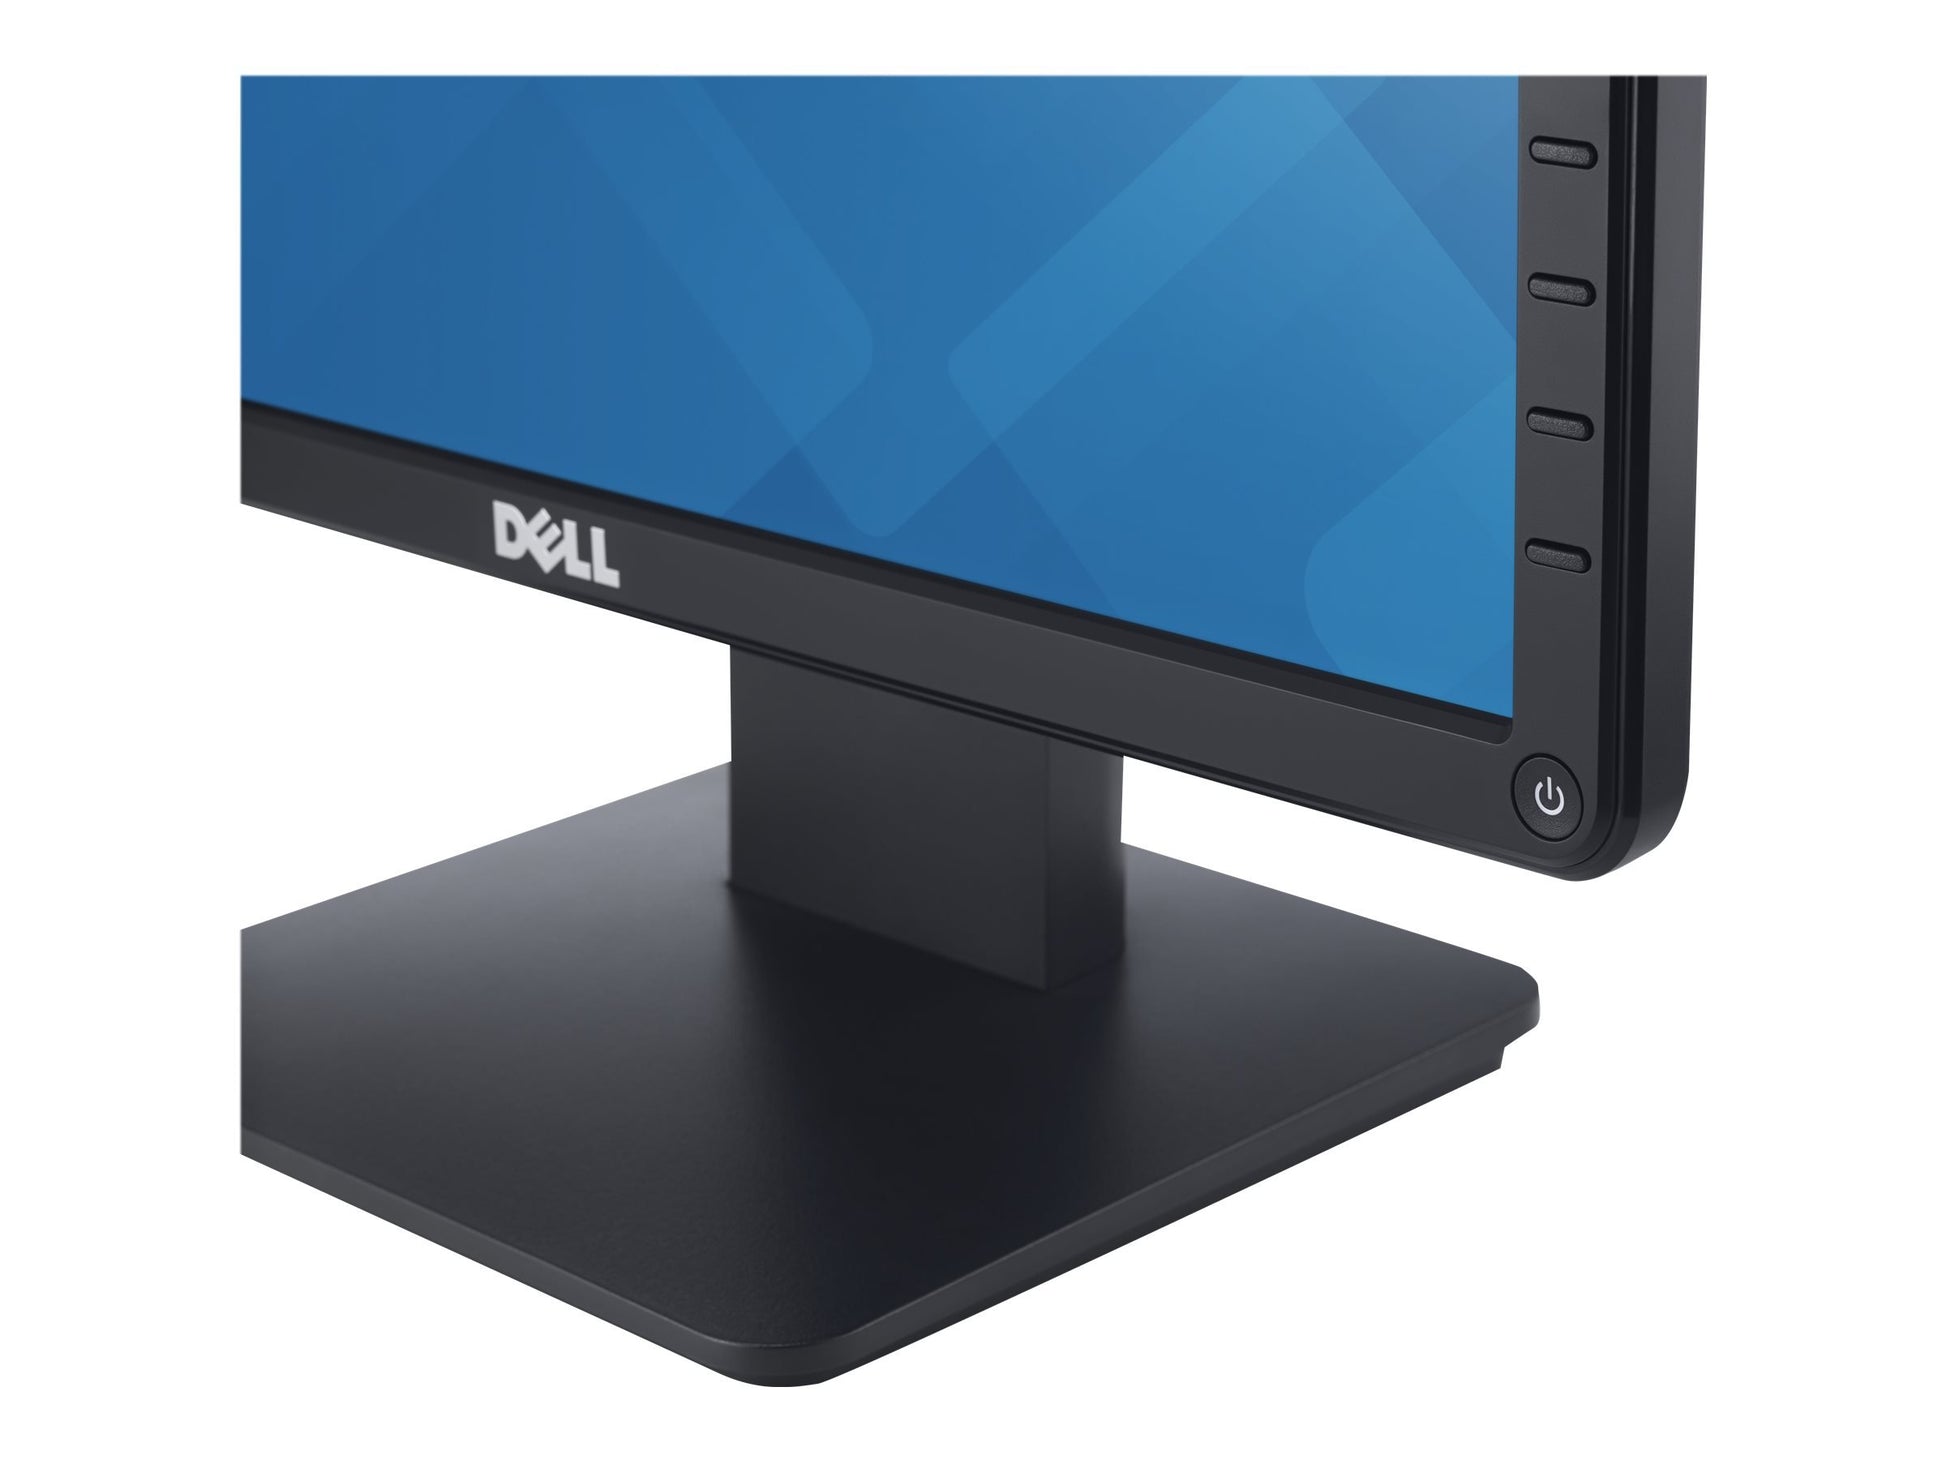 Dell 17 Monitor | E1715S